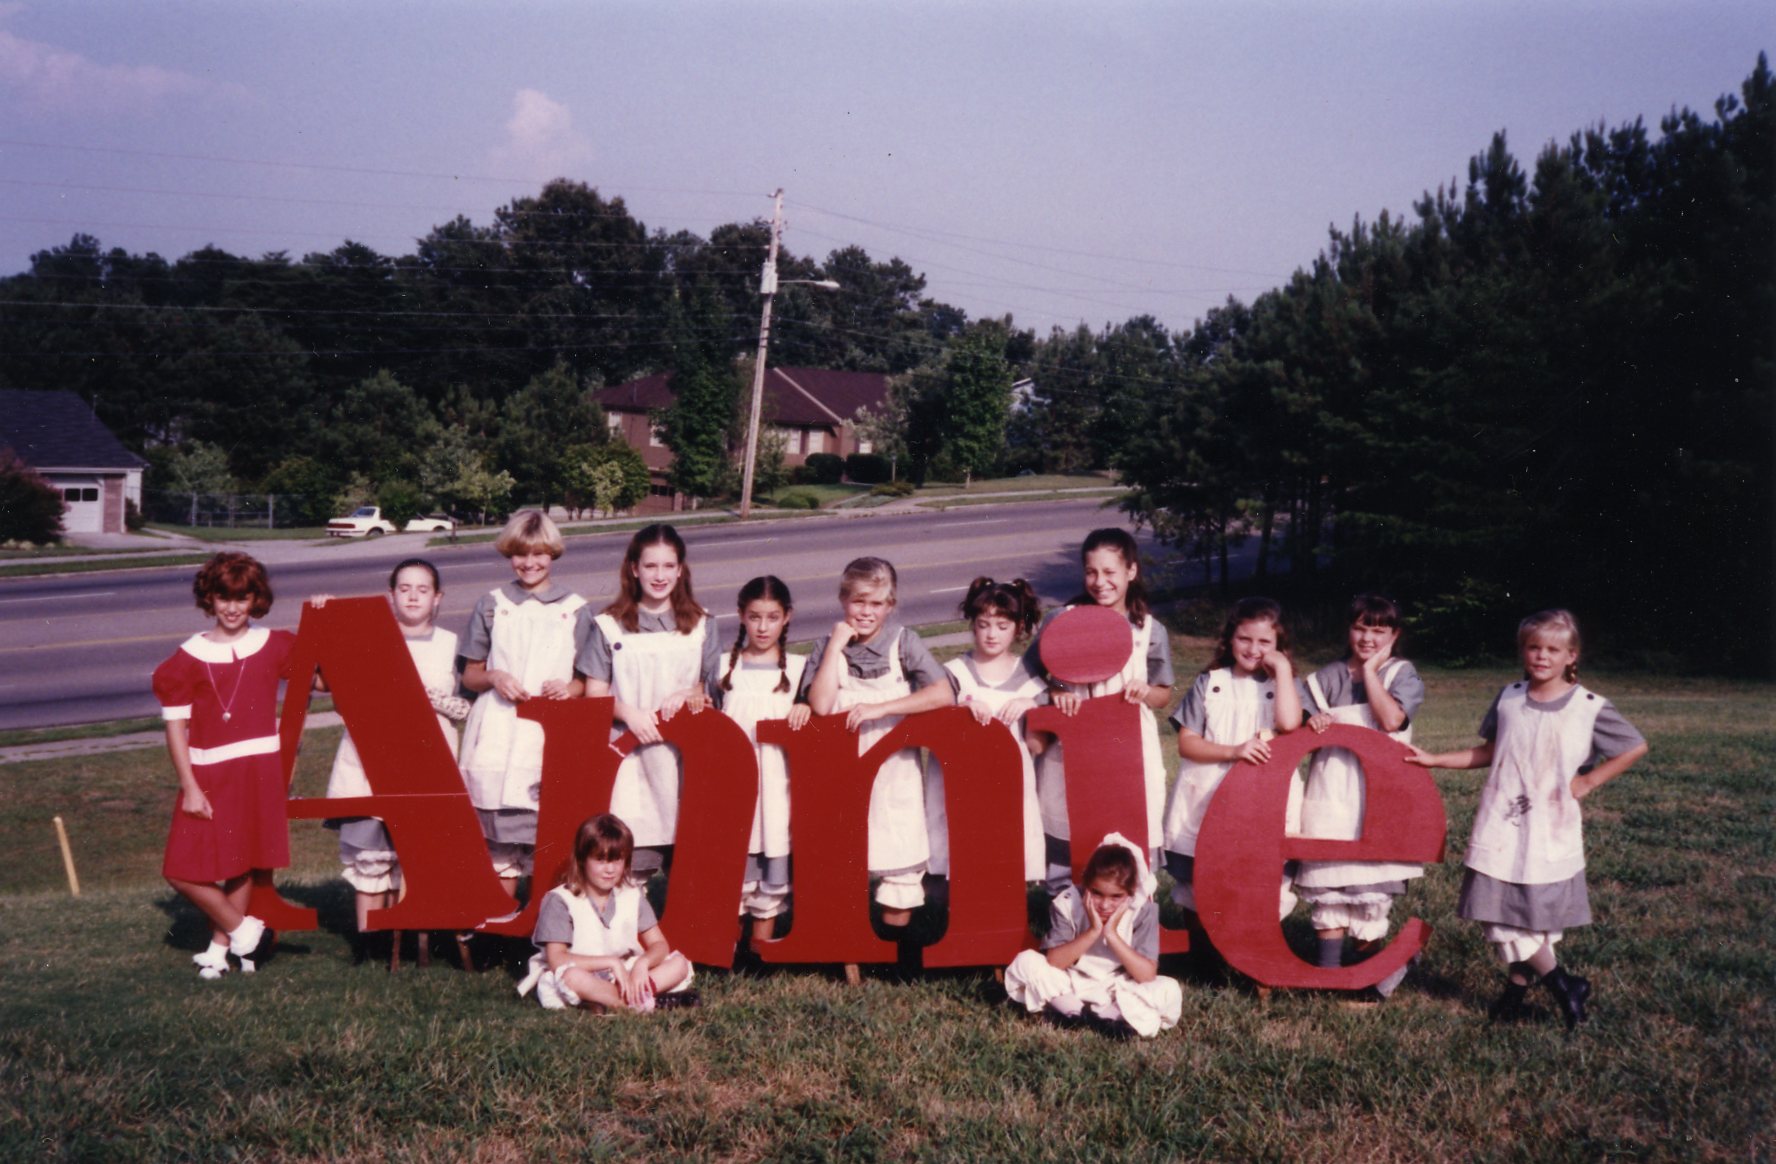 Annie - June 1993